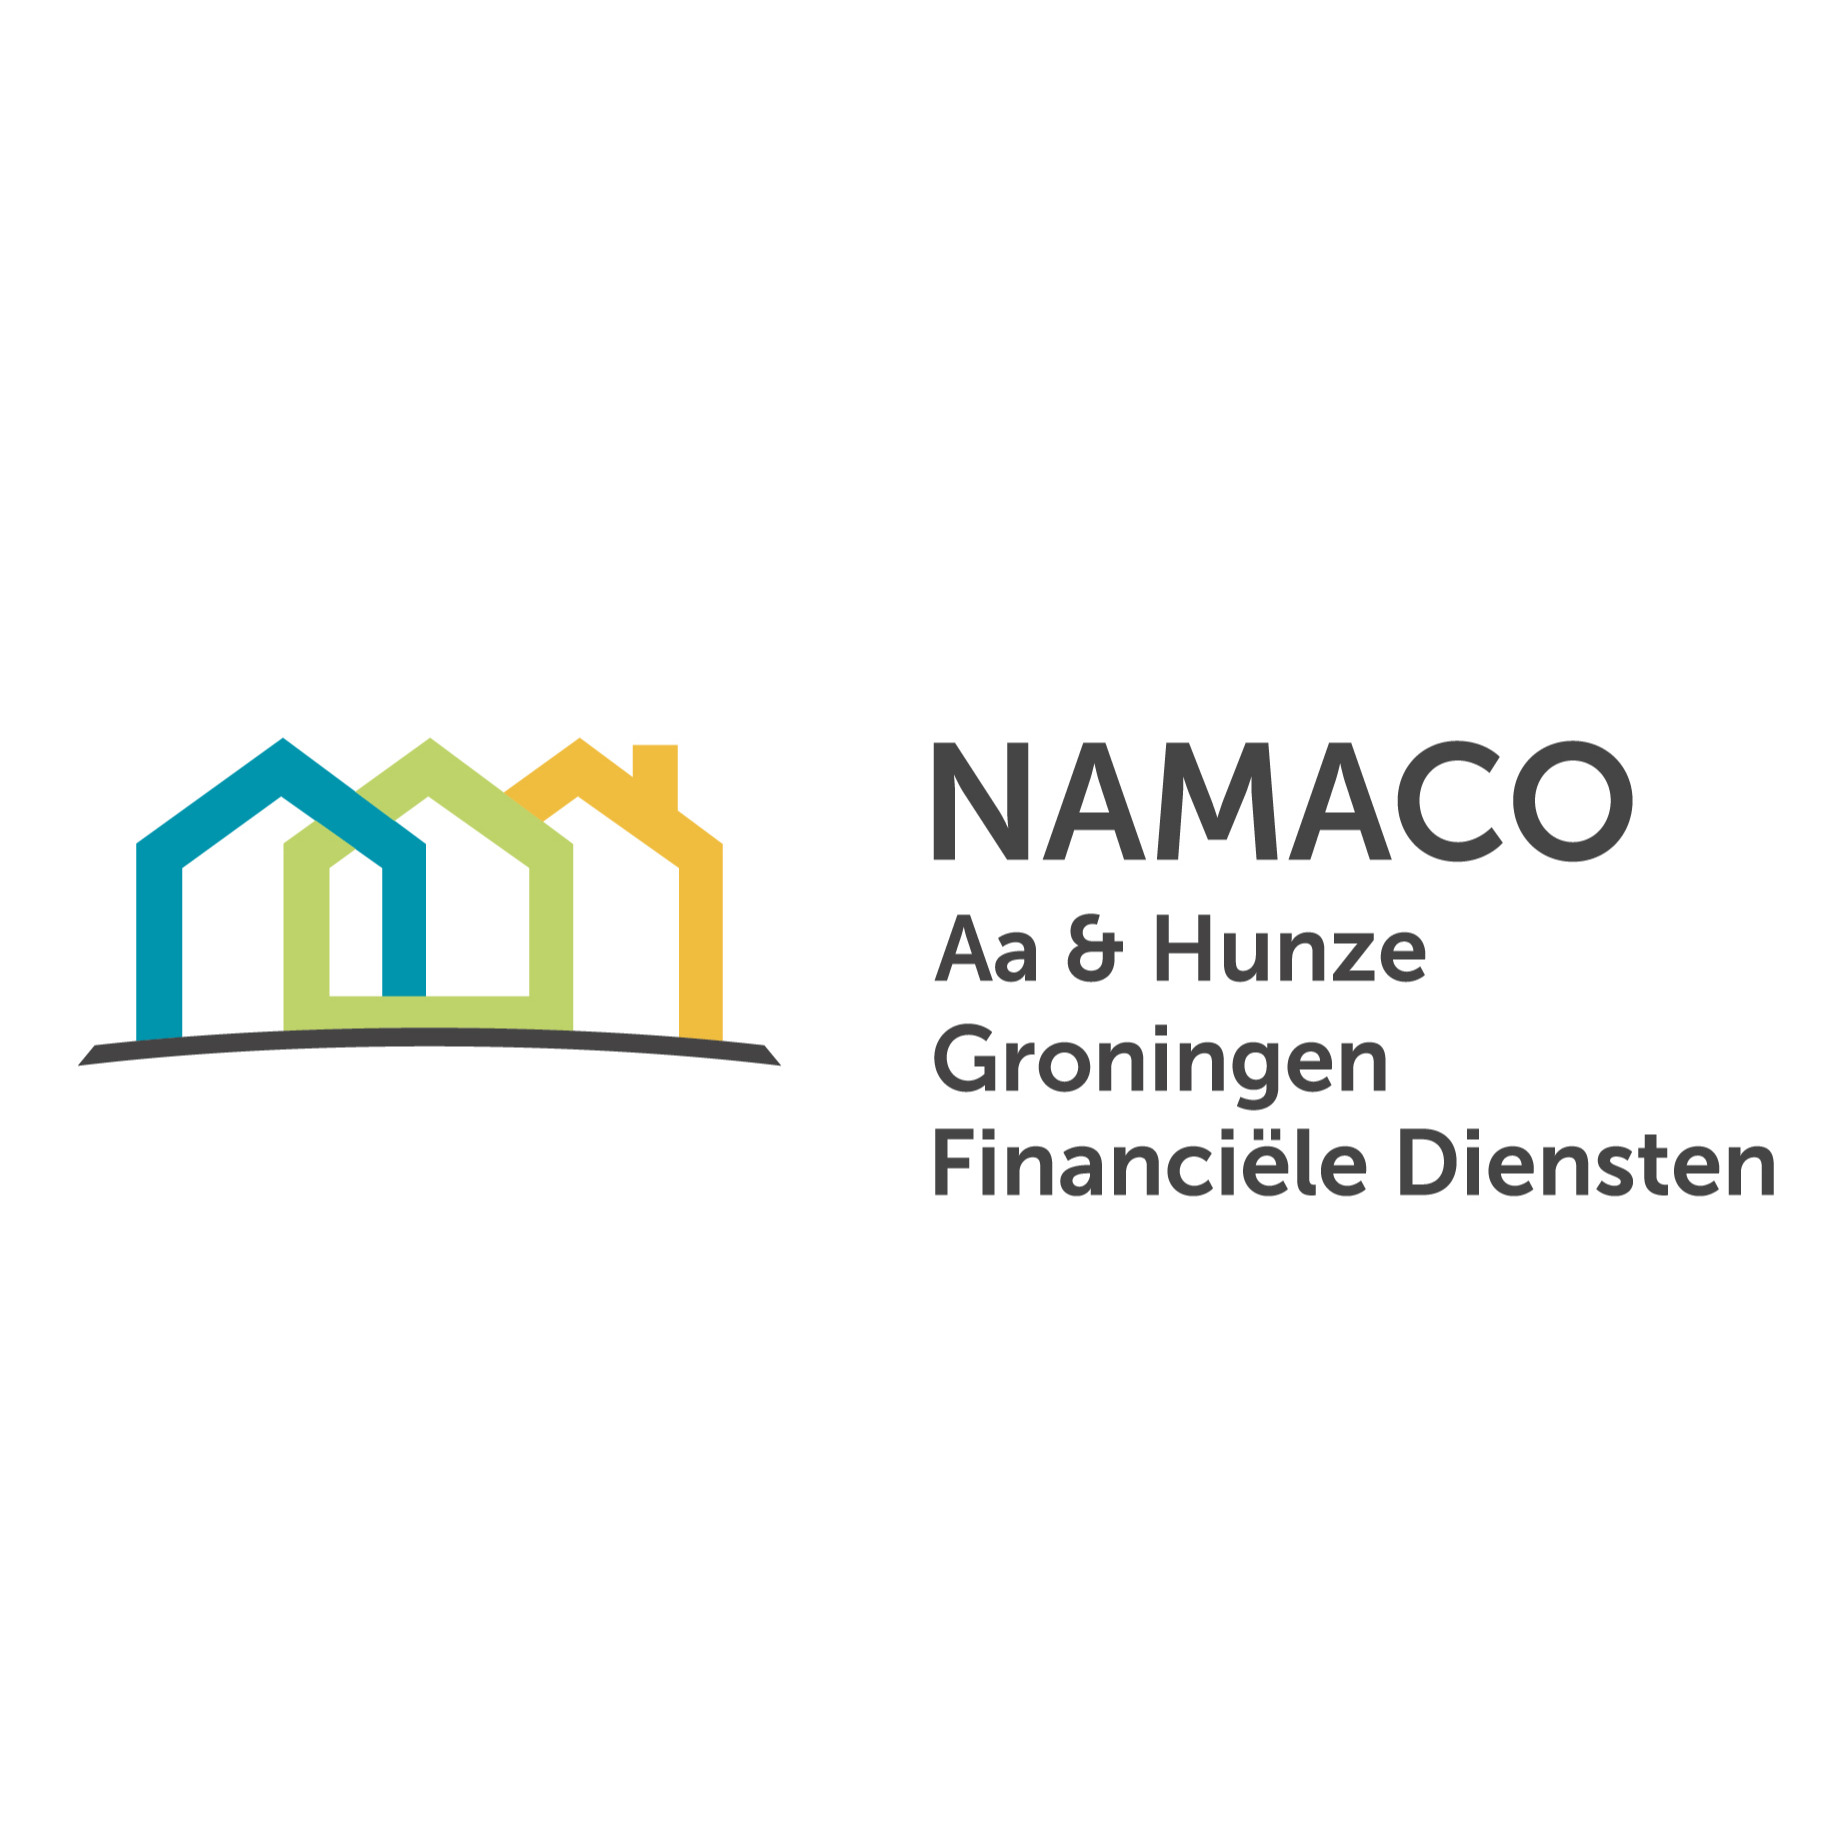 Namaco Aa & Hunze Logo